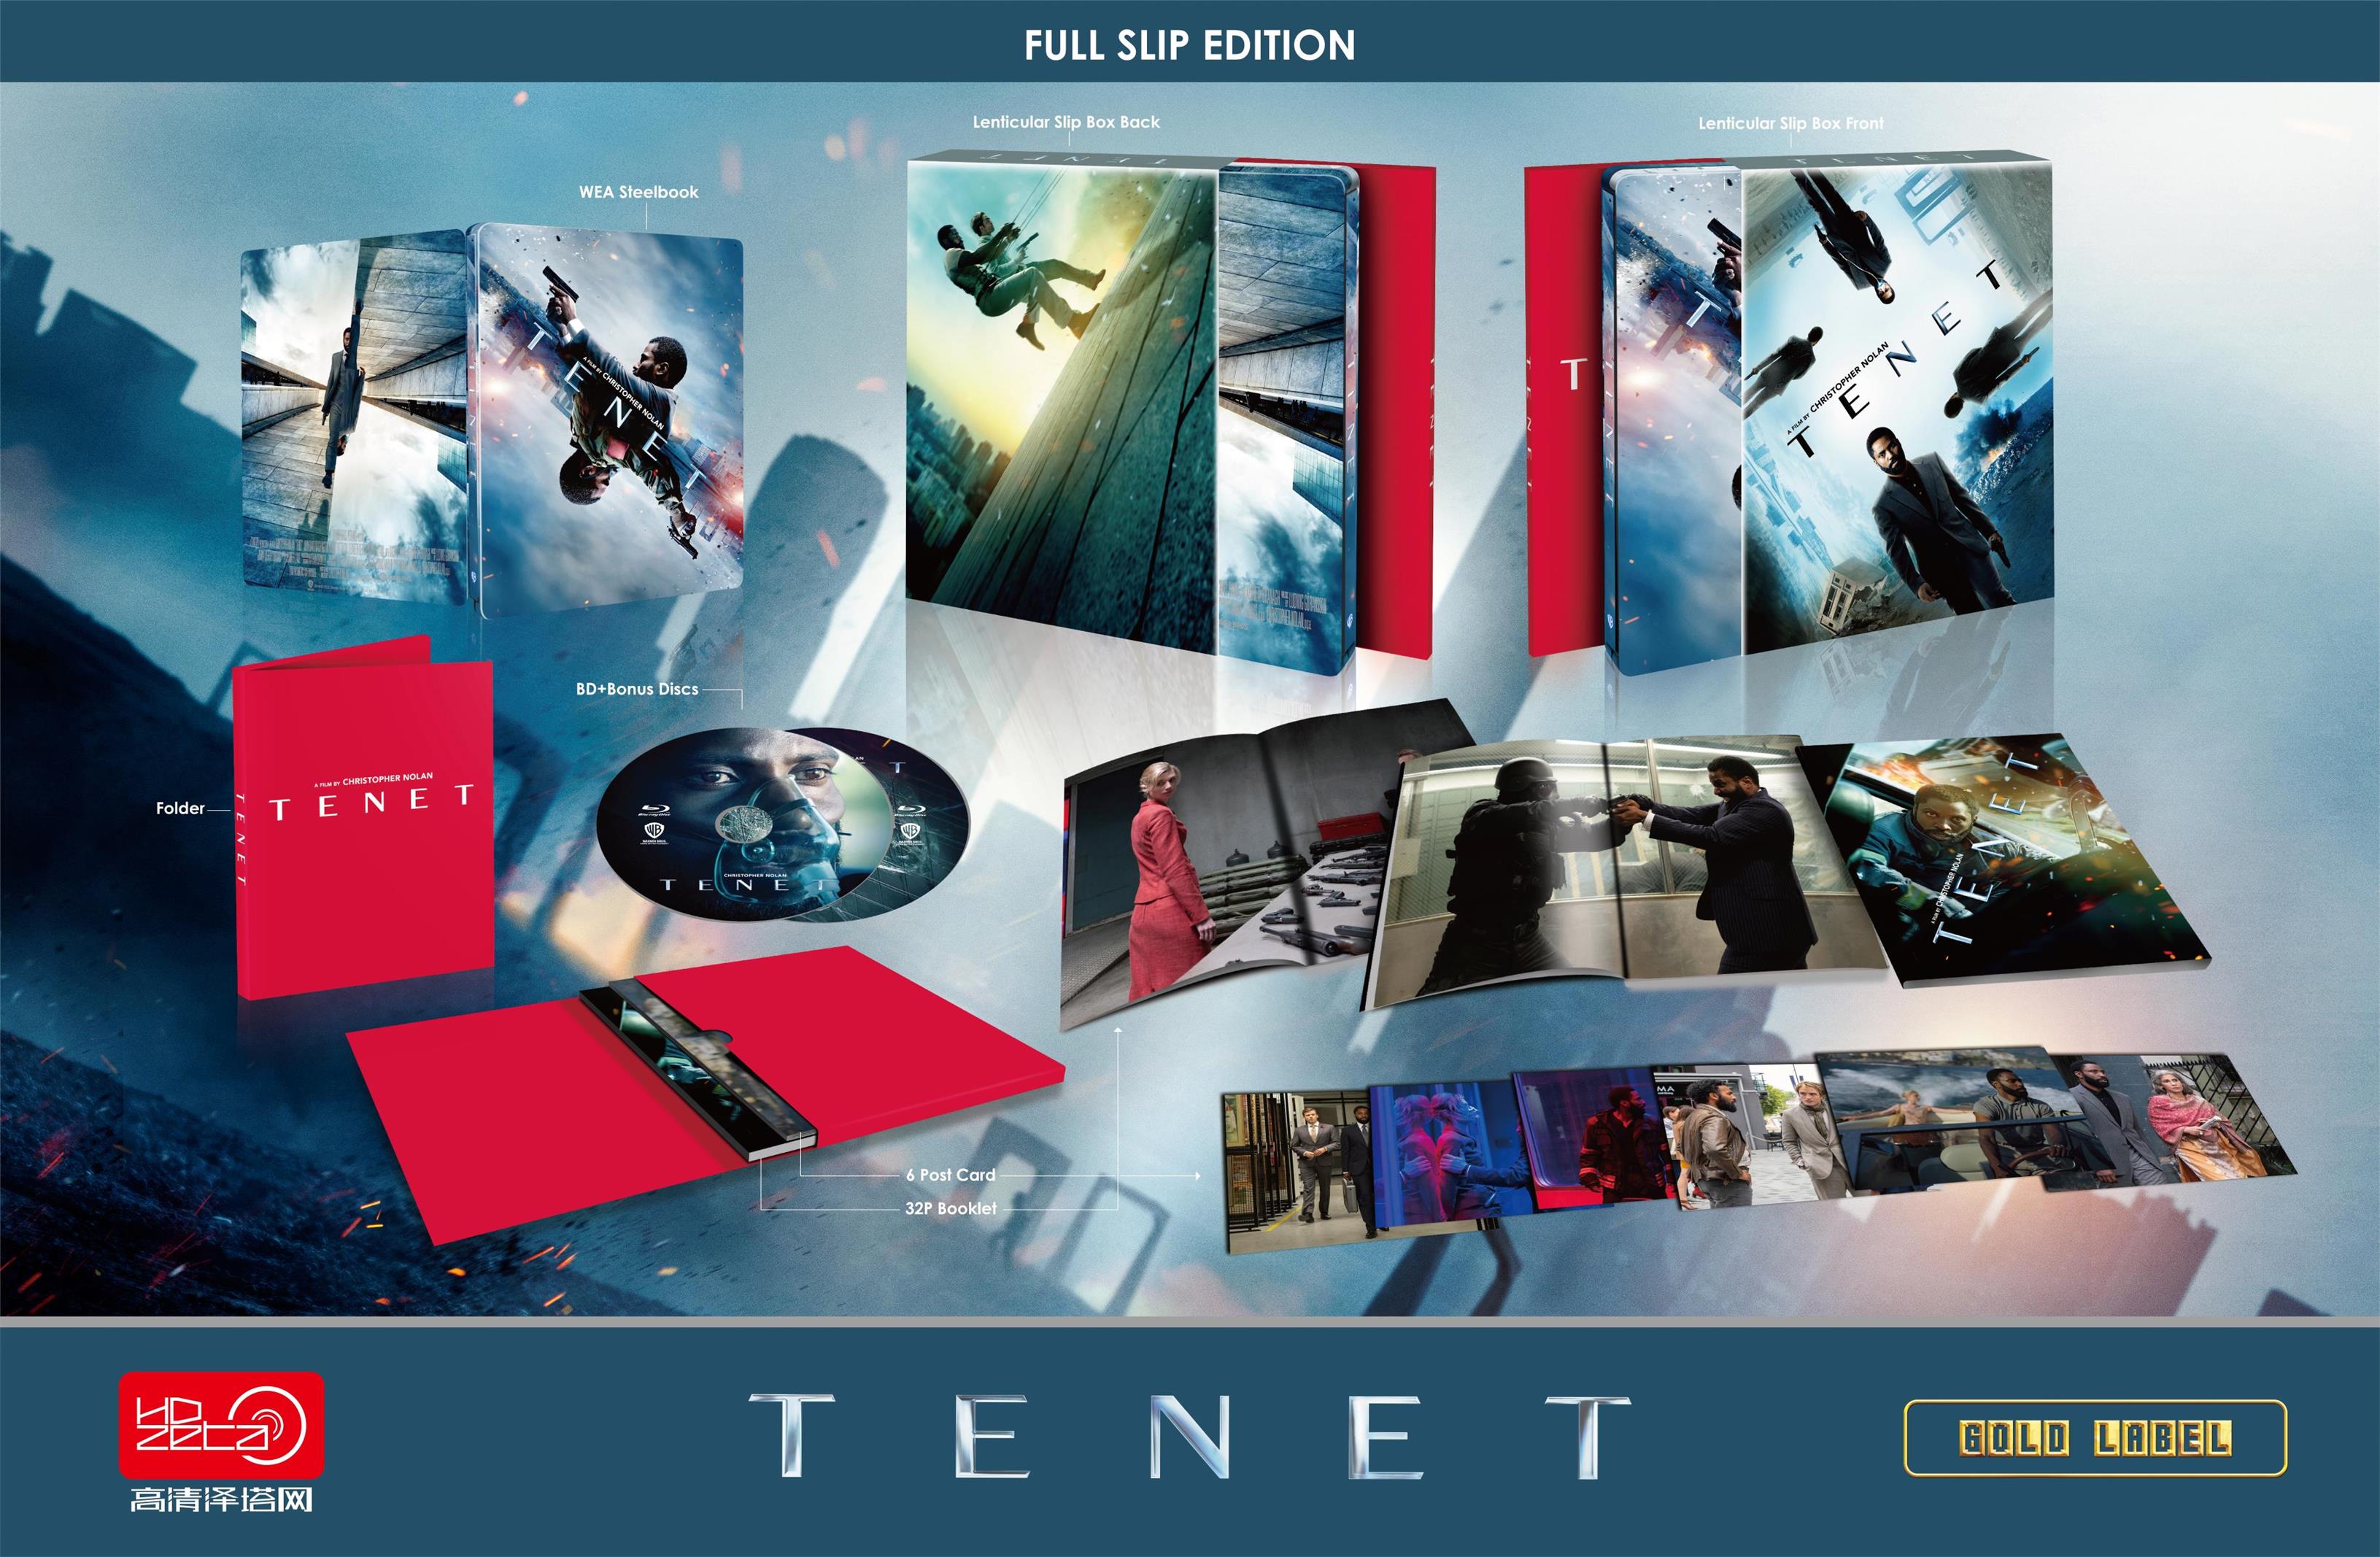 Tenet HDzeta Exclusive Fullslip Edition